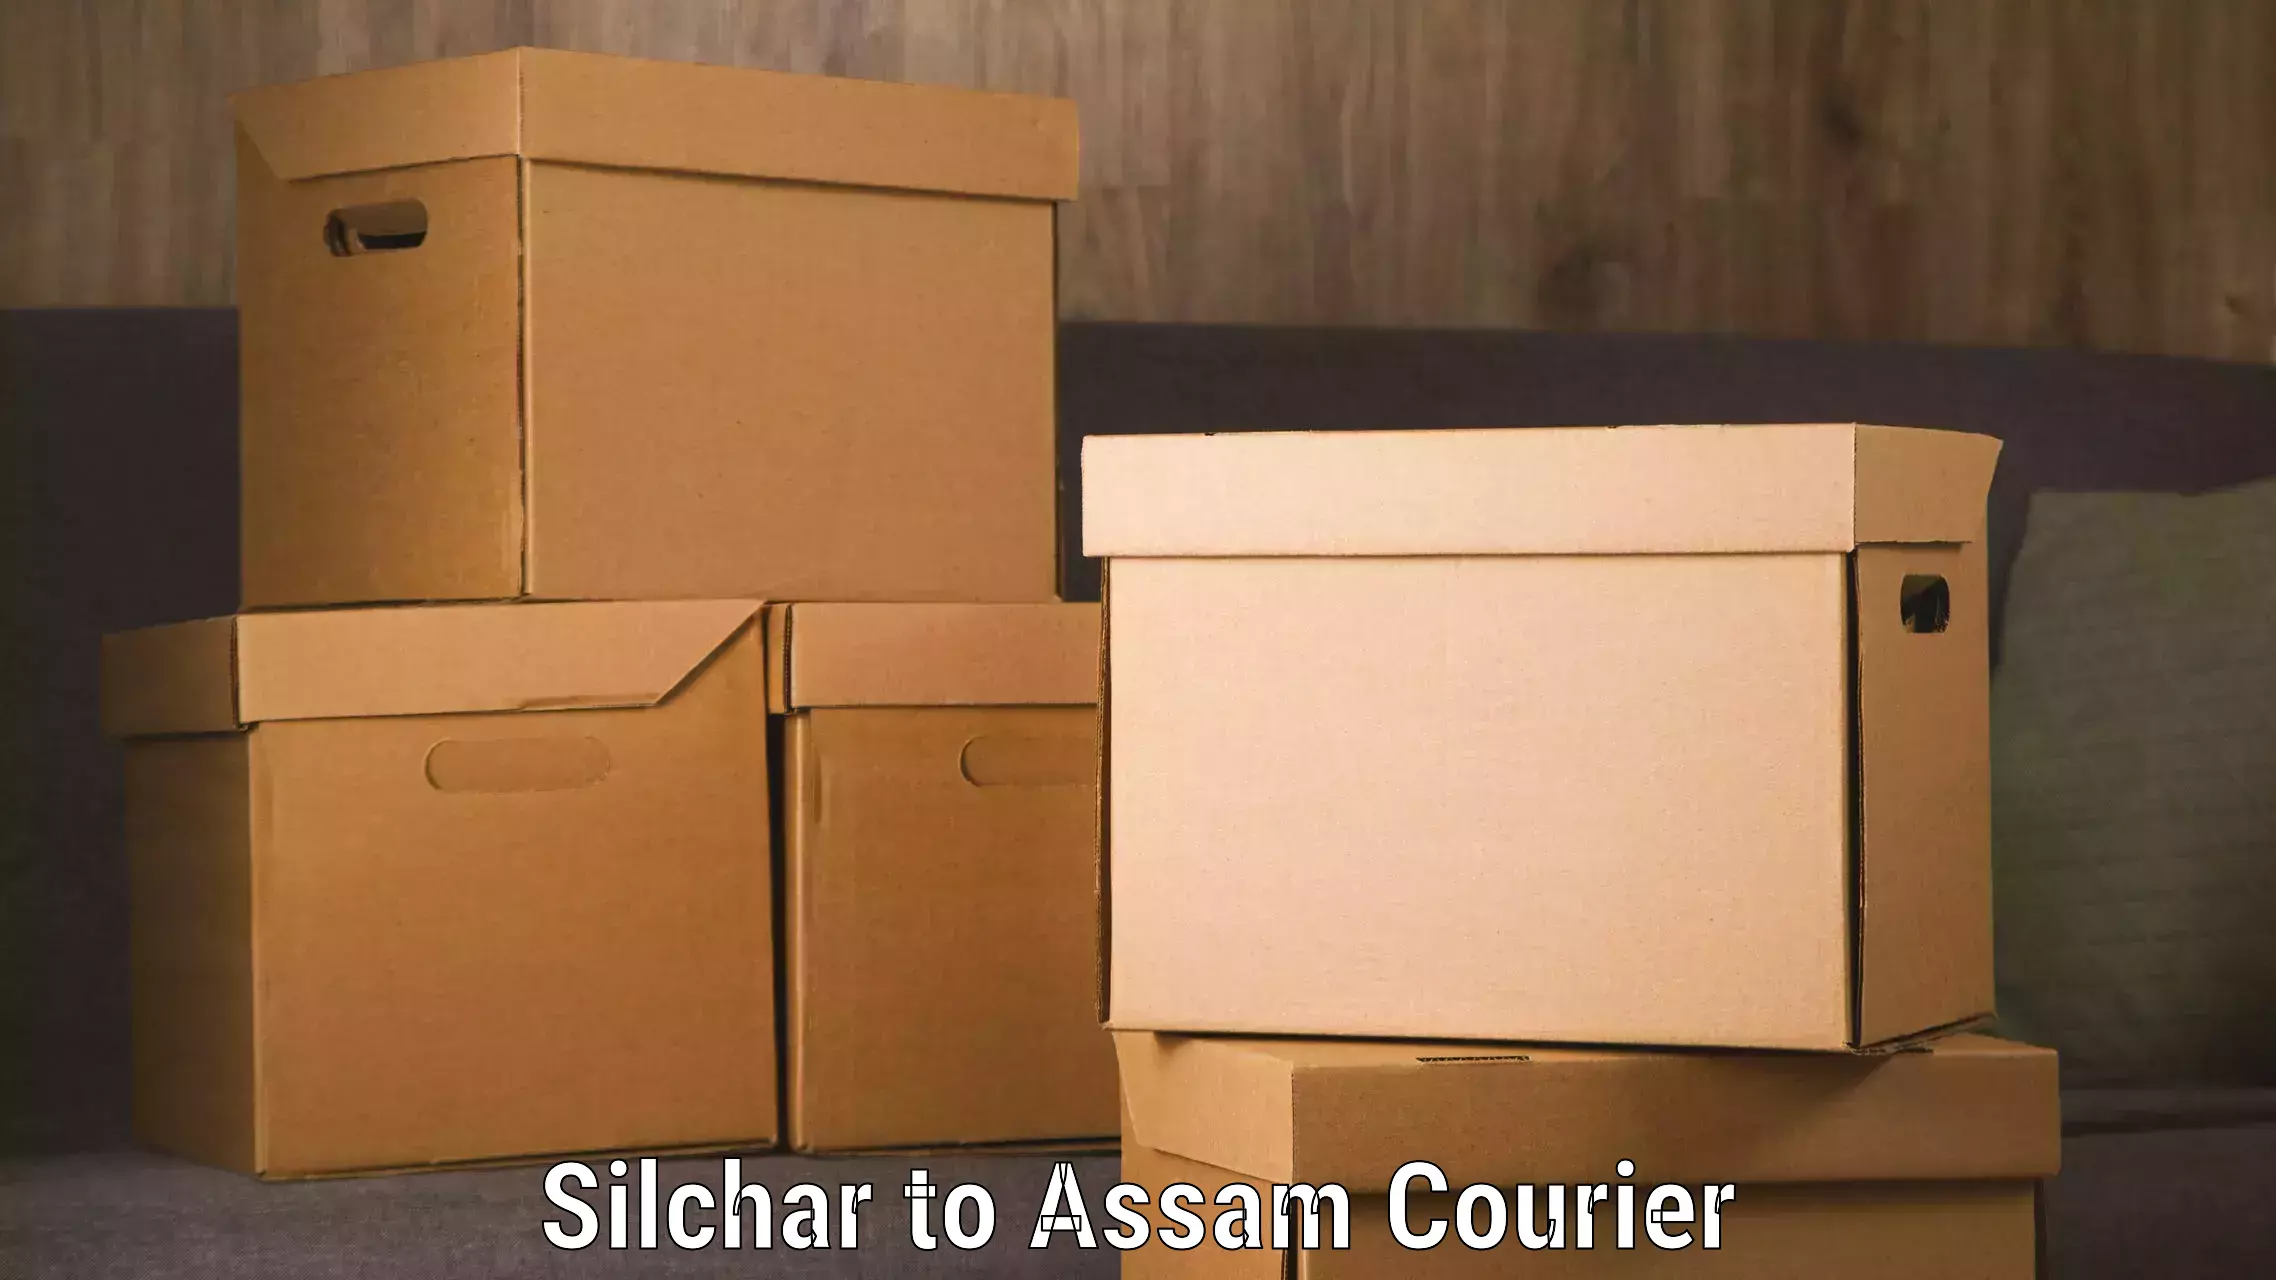 Luggage shipment specialists Silchar to Bijni